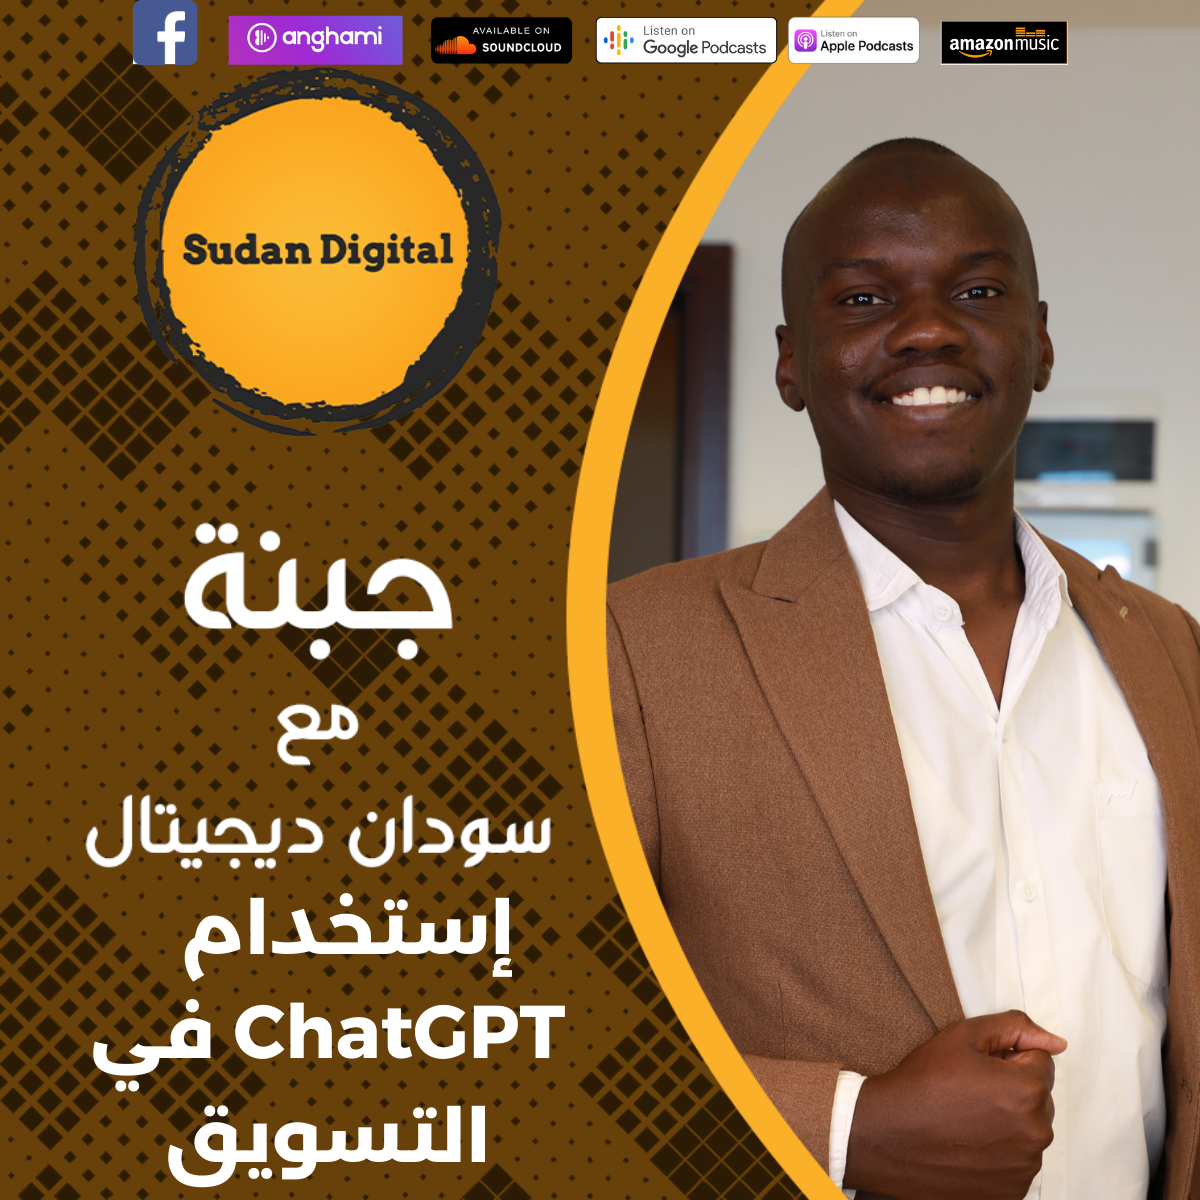 جبنة مع شودان ديجتال: إنترنت الأشياء في السودان مع كمال نصر الدين ووهج ومحمد خير